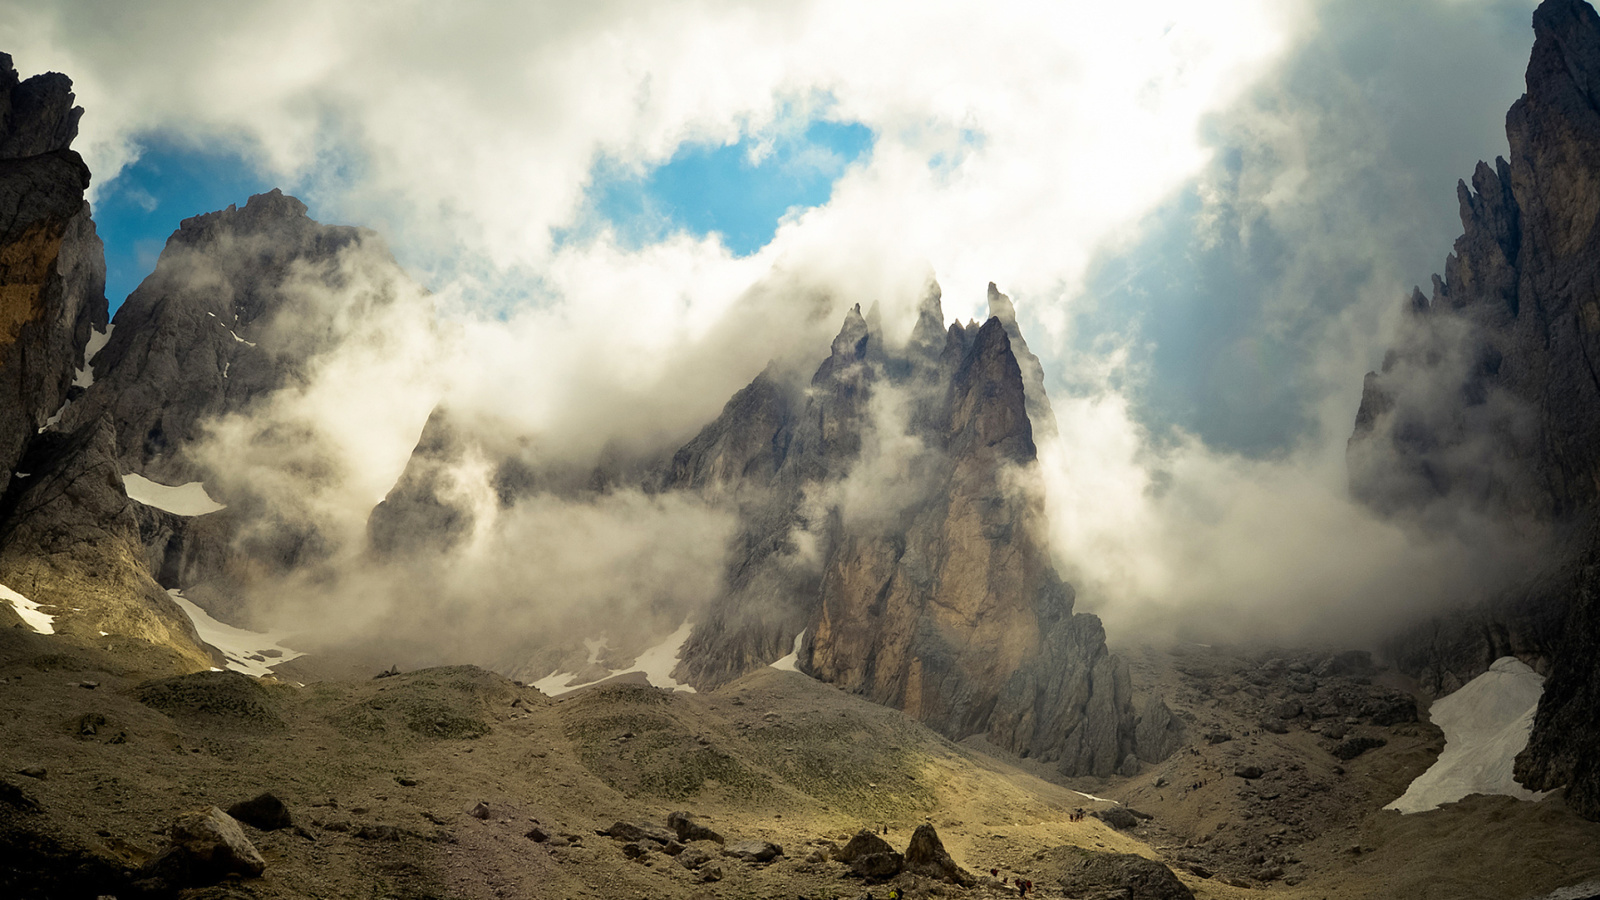 Das Mountains Peaks in Fog, Landscape Wallpaper 1600x900